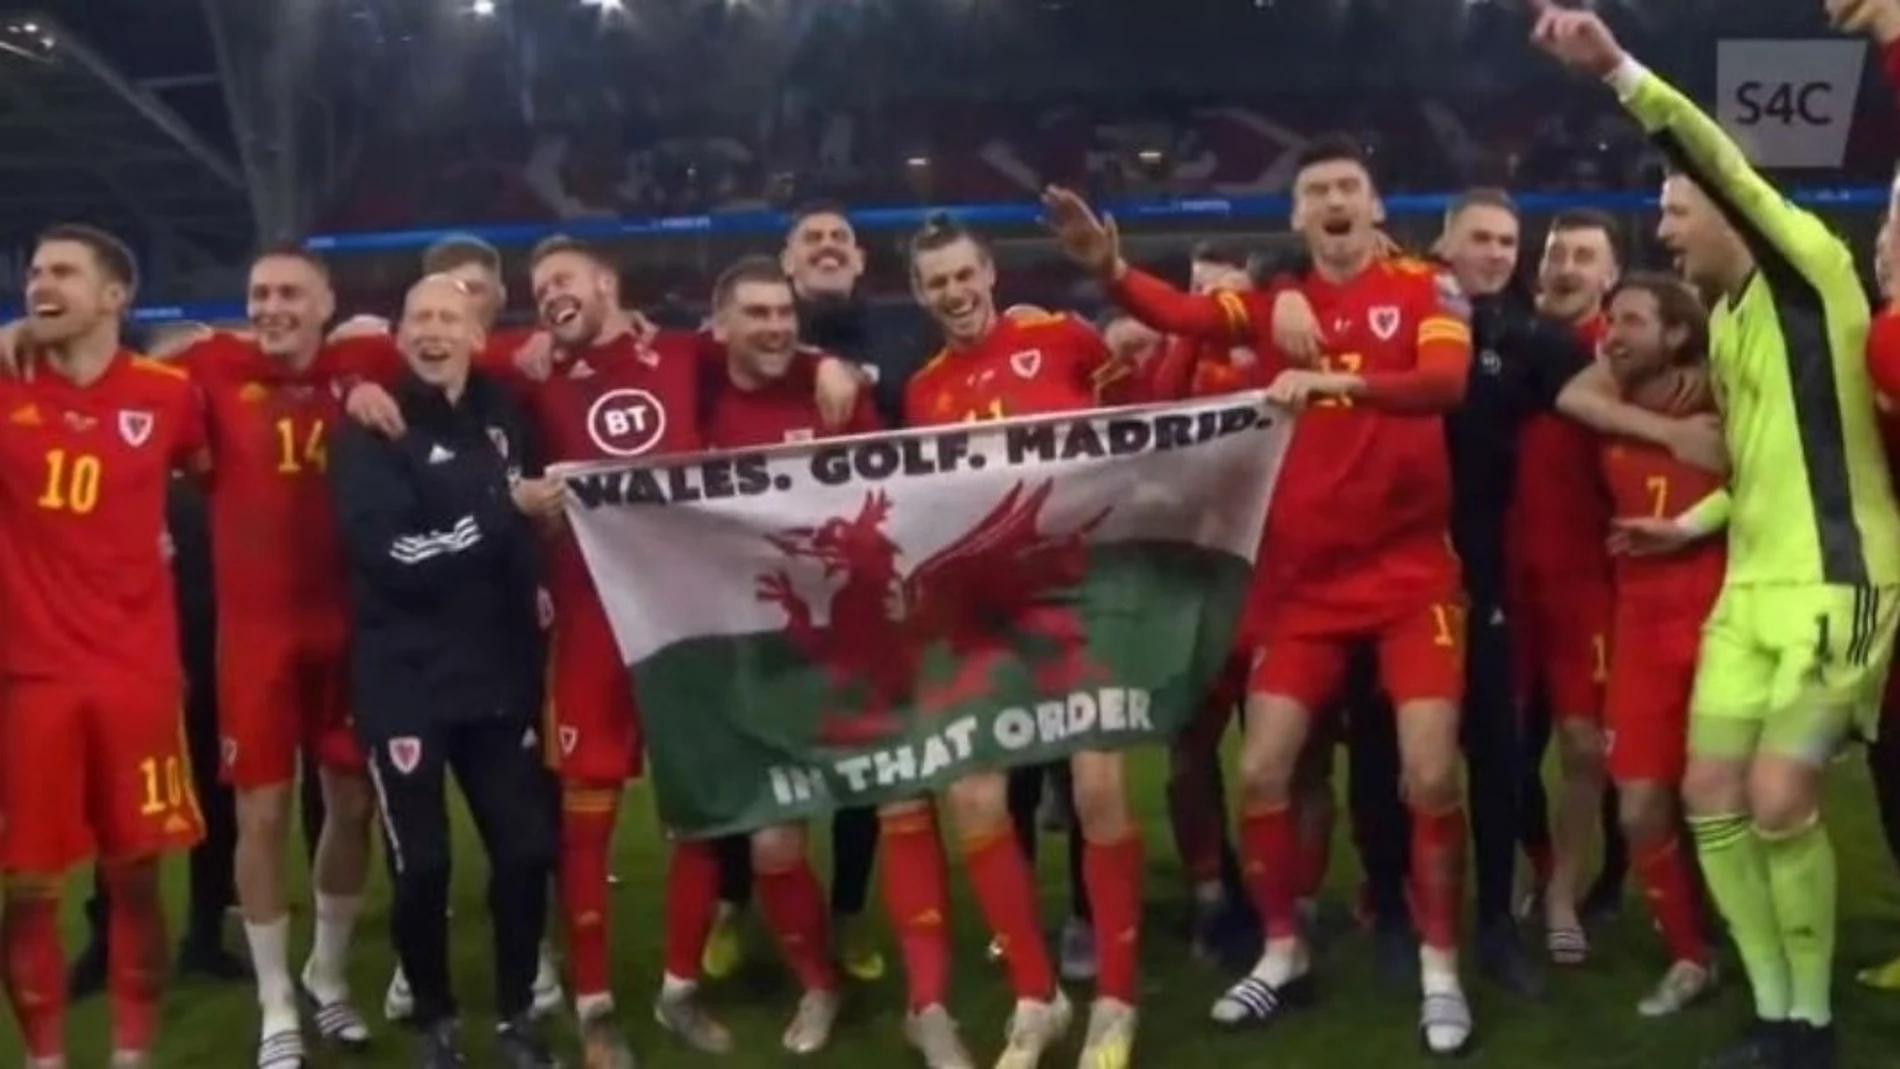 Fútbol/Eurocopa.- Bale celebra el billete a la Euro con una bandera que dice: 'Gales, golf, Madrid, en ese orden'